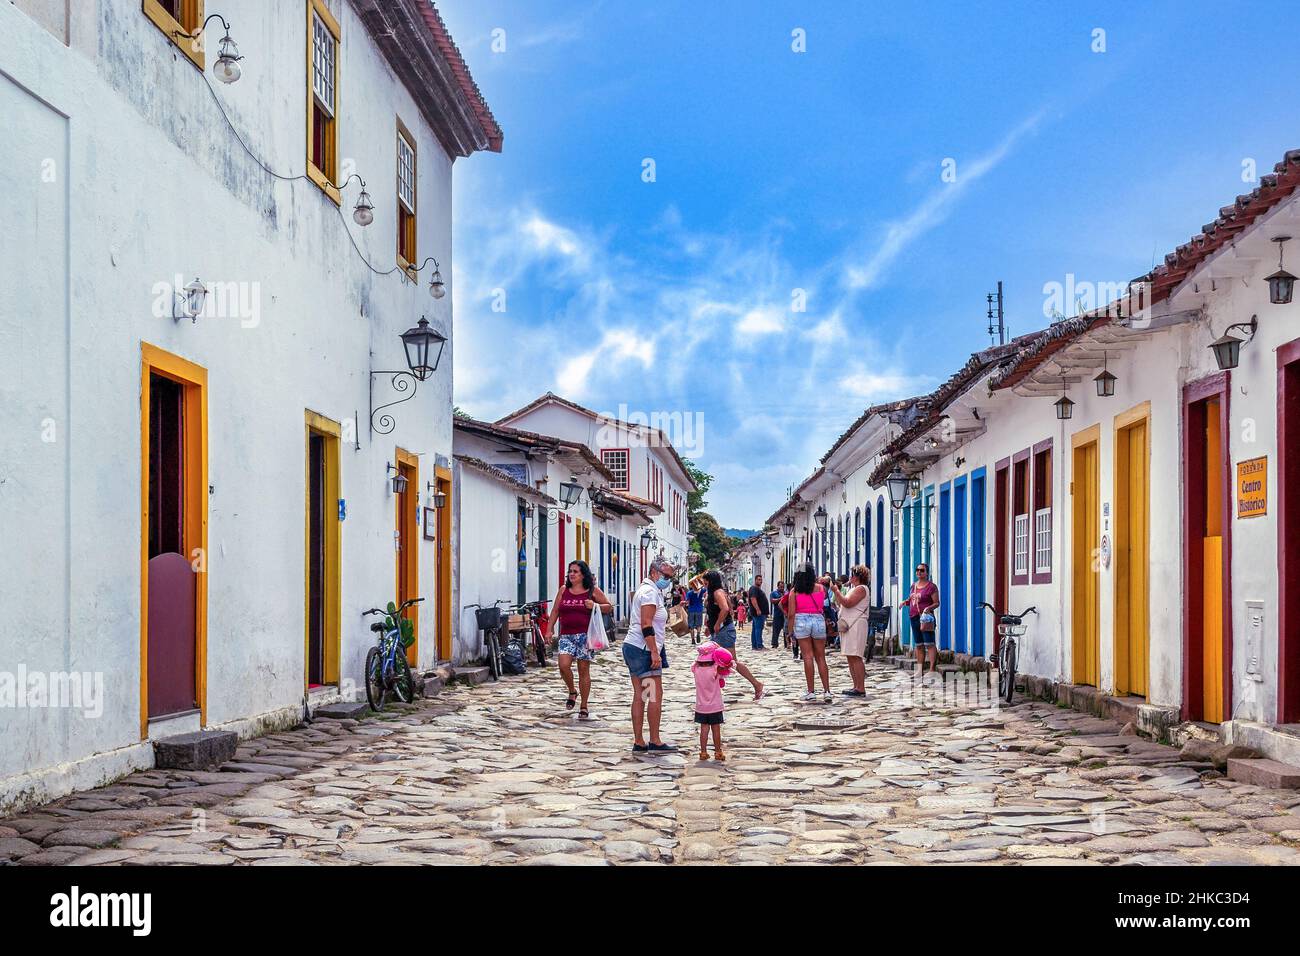 Architettura in stile coloniale portoghese nelle case e negli edifici della città di Paraty, nello stato di Rio de Janeiro, Brasile. La città vecchia è un famoso pla Foto Stock